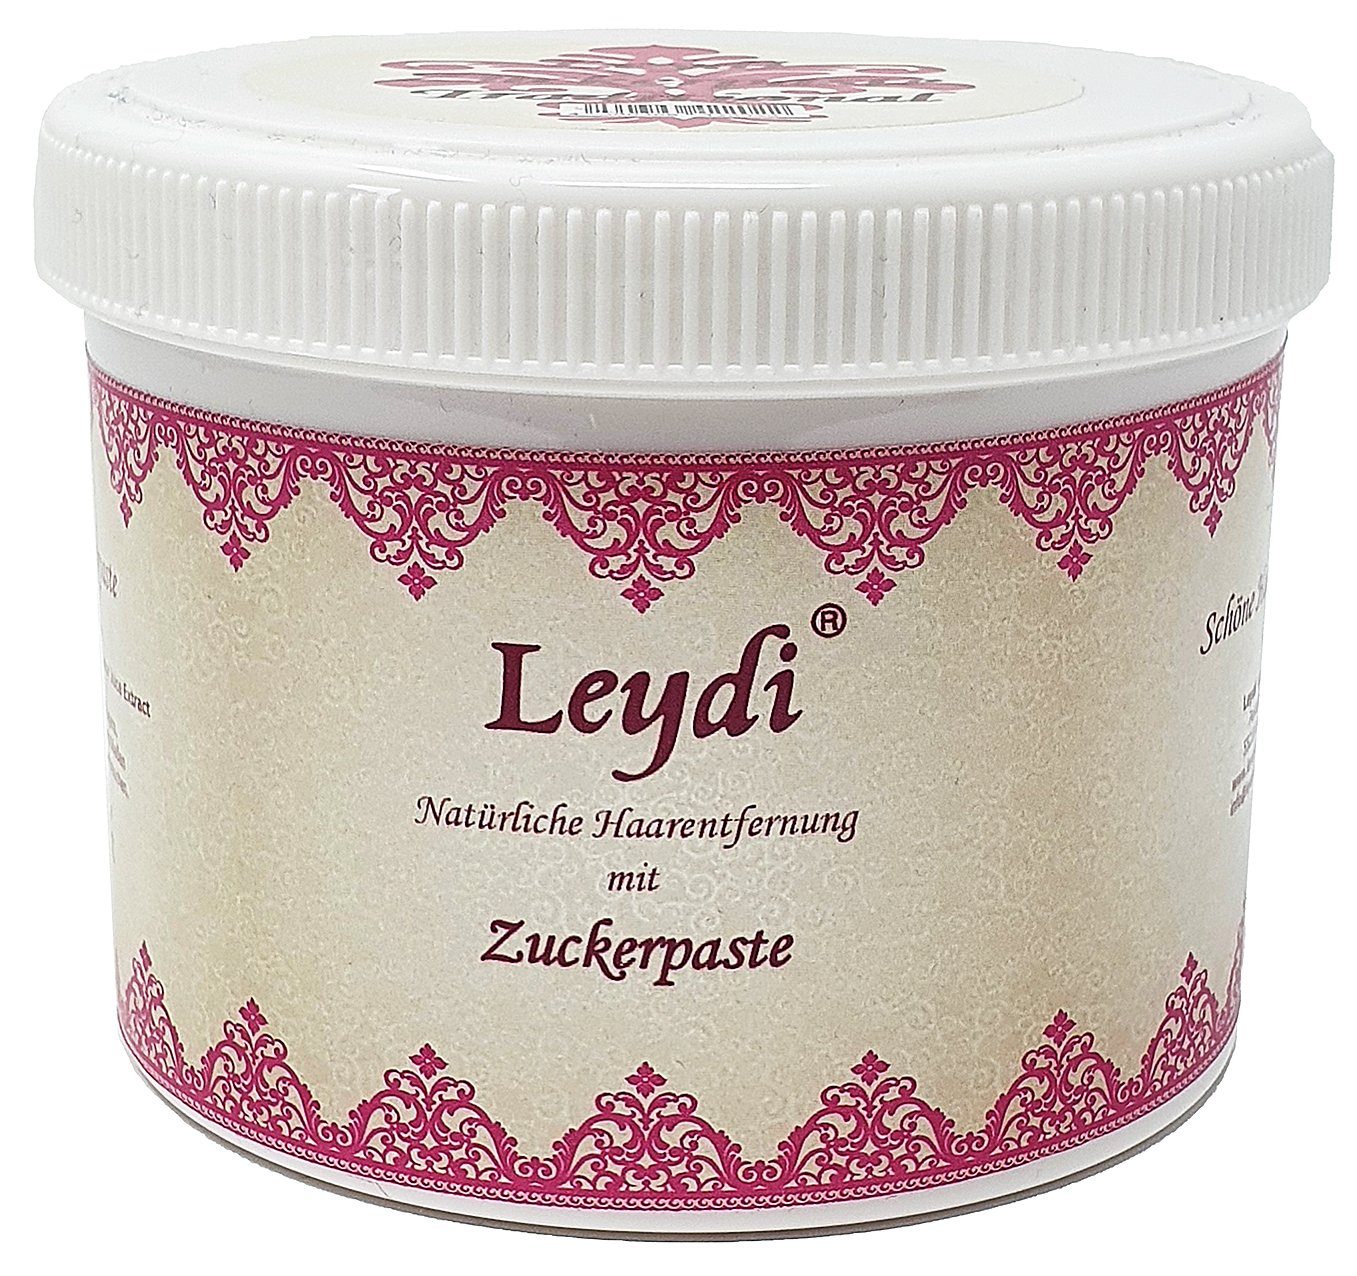 750g Supersoft Zuckerpaste Zuckerpaste Leydi Leydi